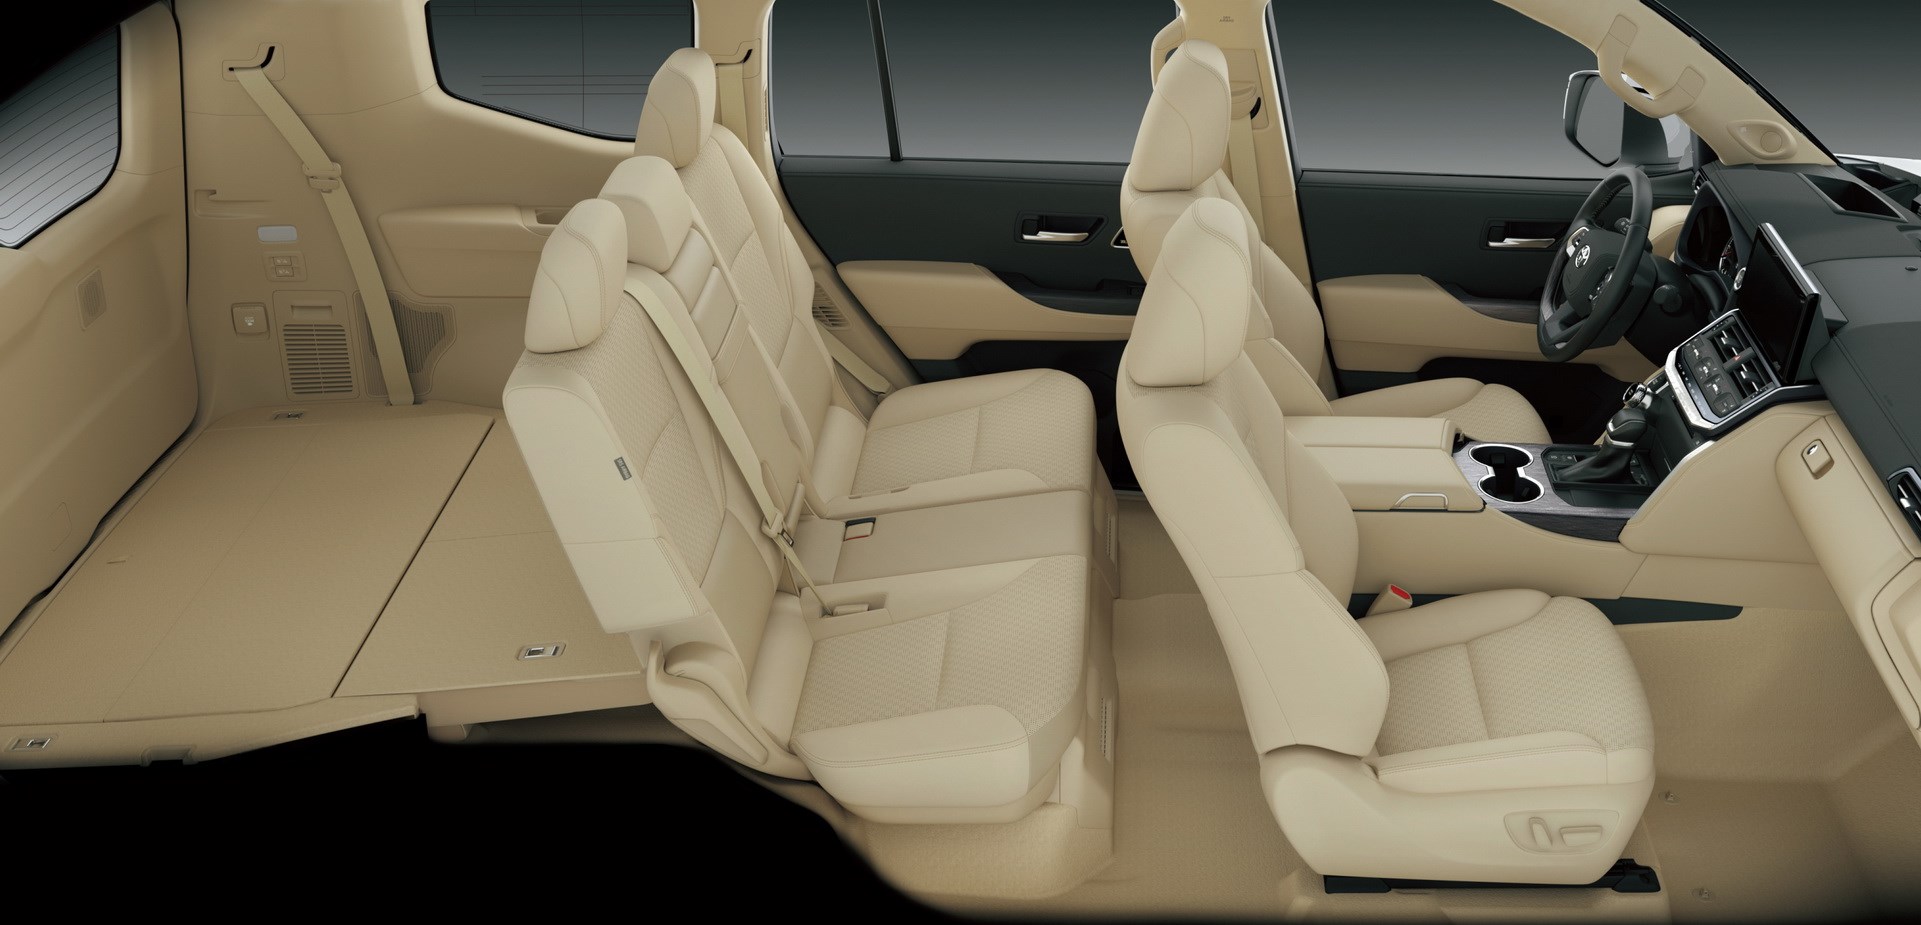 Yeni nesil 2021 Toyota Land Cruiser tasarımı ve özellikleri